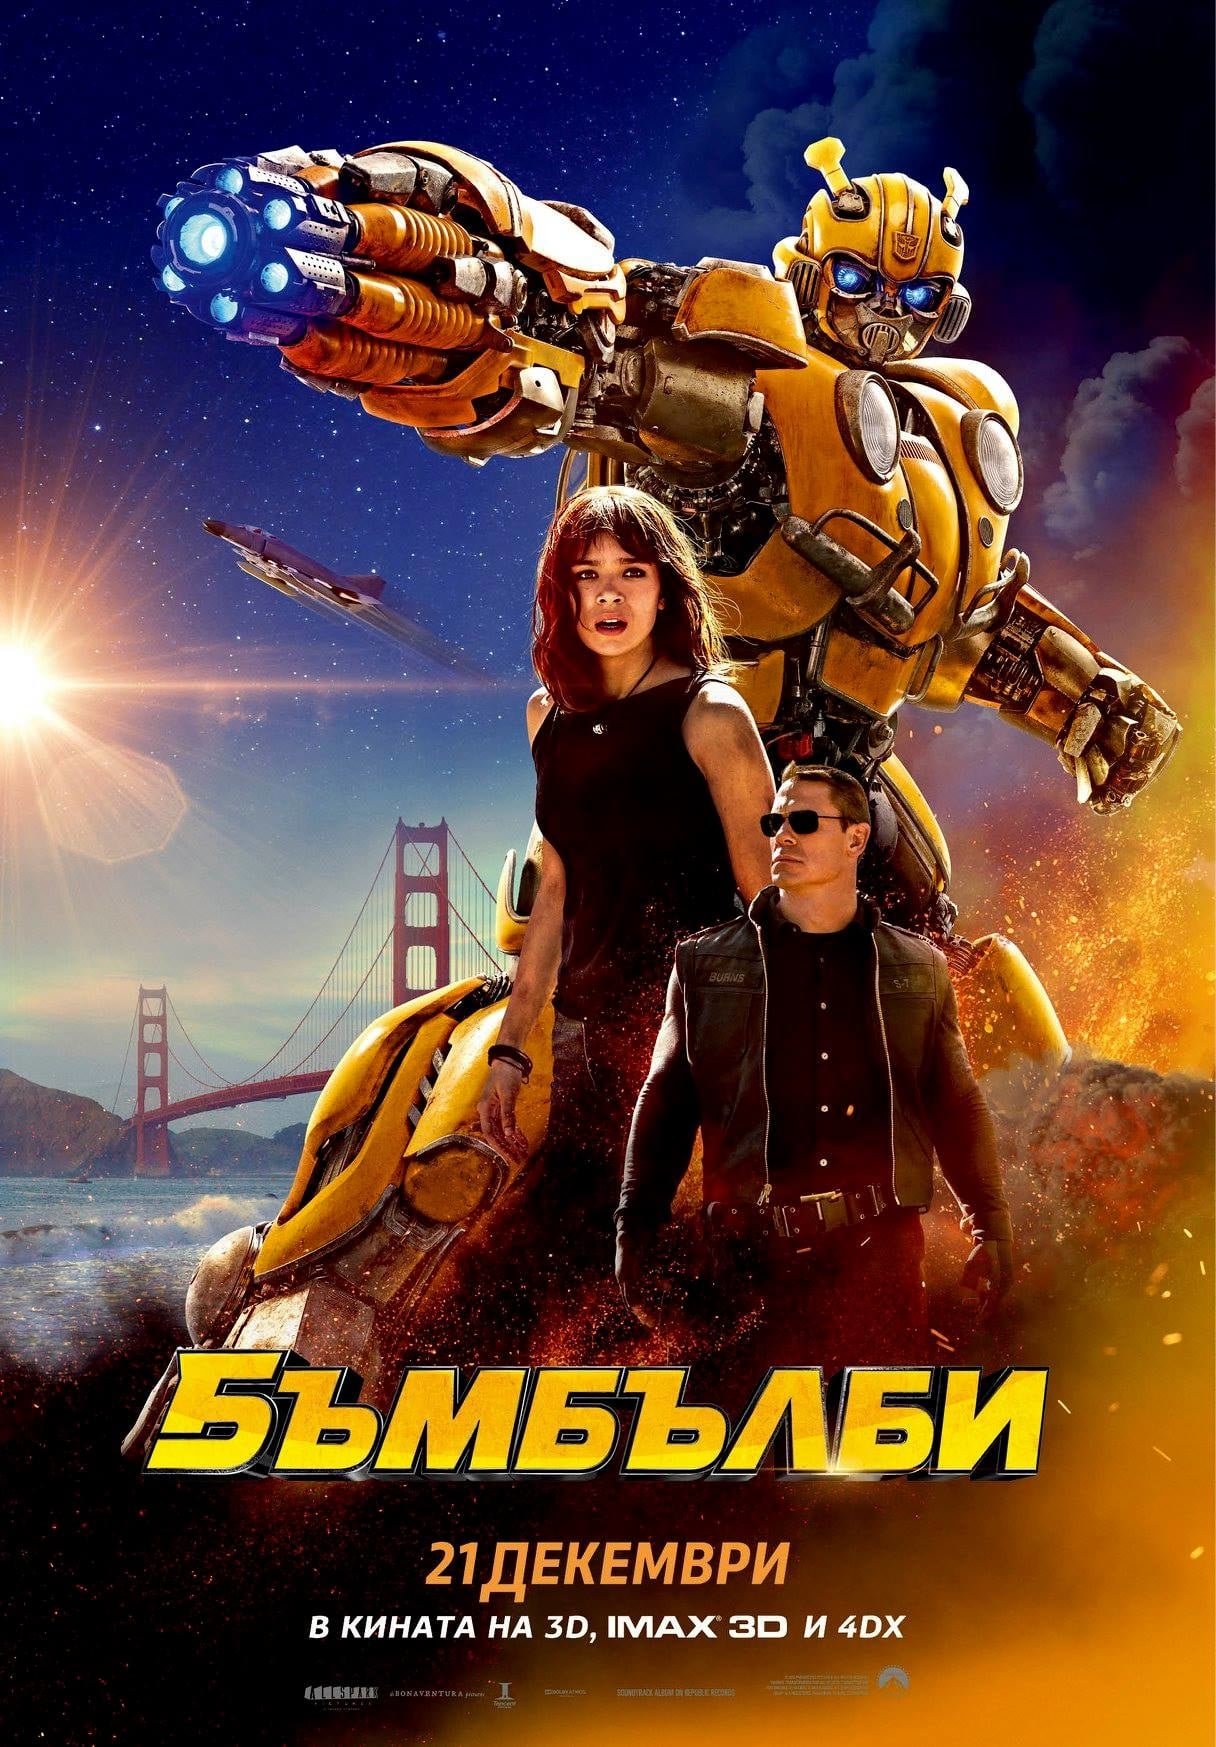 Transformers VI : Bumblebee / Трансформърс 6 : Бъмбълби (2018)